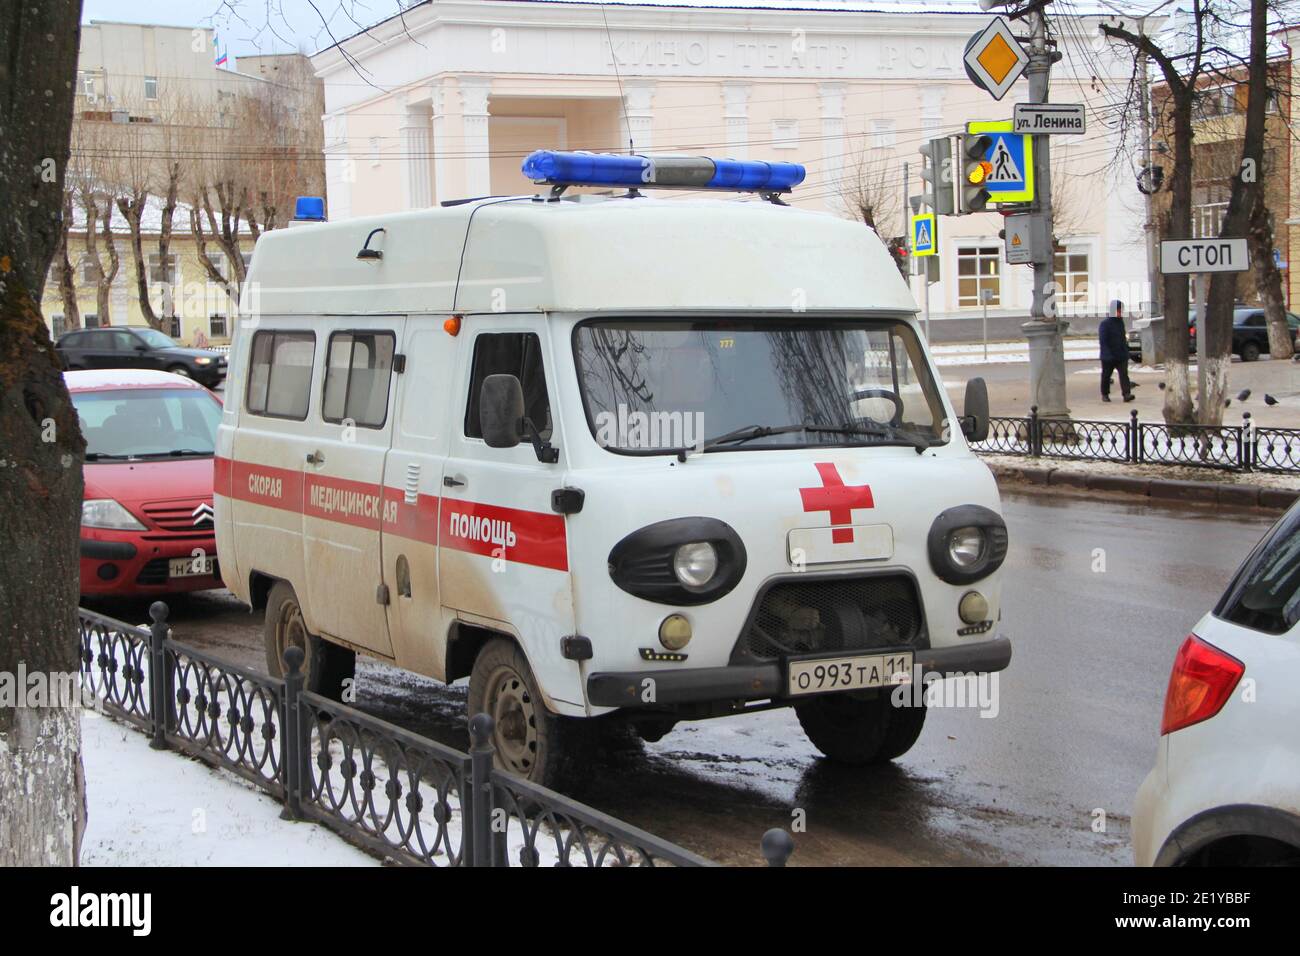 13-11-2020. Russia, Syktyvkar. Bianco vecchio marchio russo ambulanza UAZ con una striscia rossa con luci blu lampeggiante su una strada della città in Russia. Foto Stock